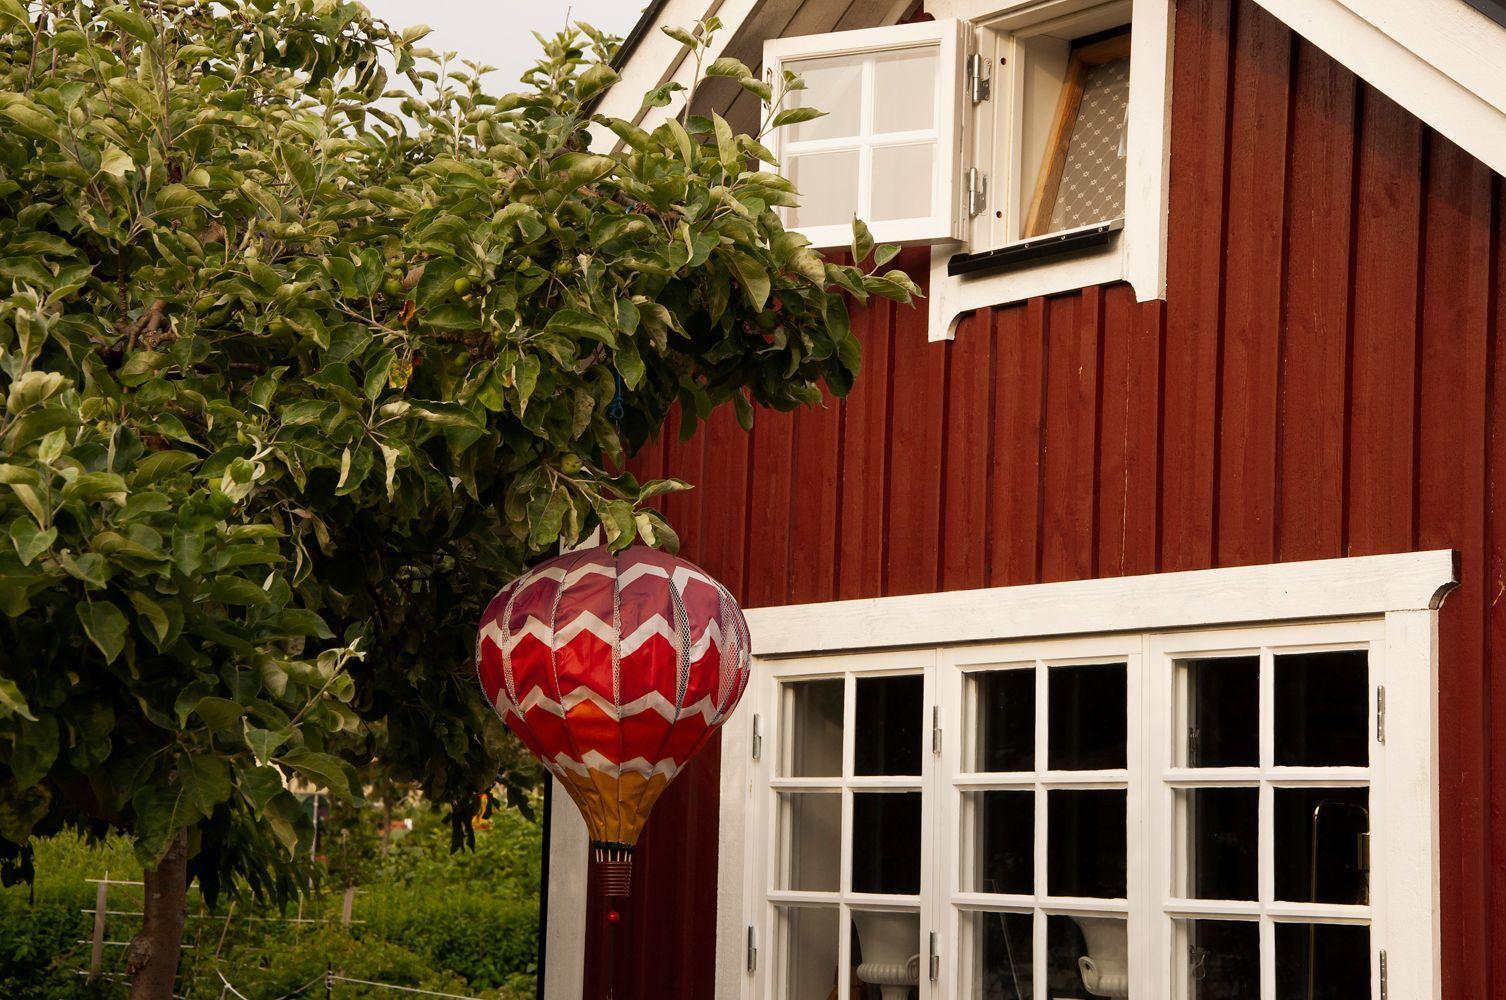 En härlig miljöbild på ett falurött litet hus med ett äppelträd utanför. I äppelträdet hänger en röd luftballong som dekoration.